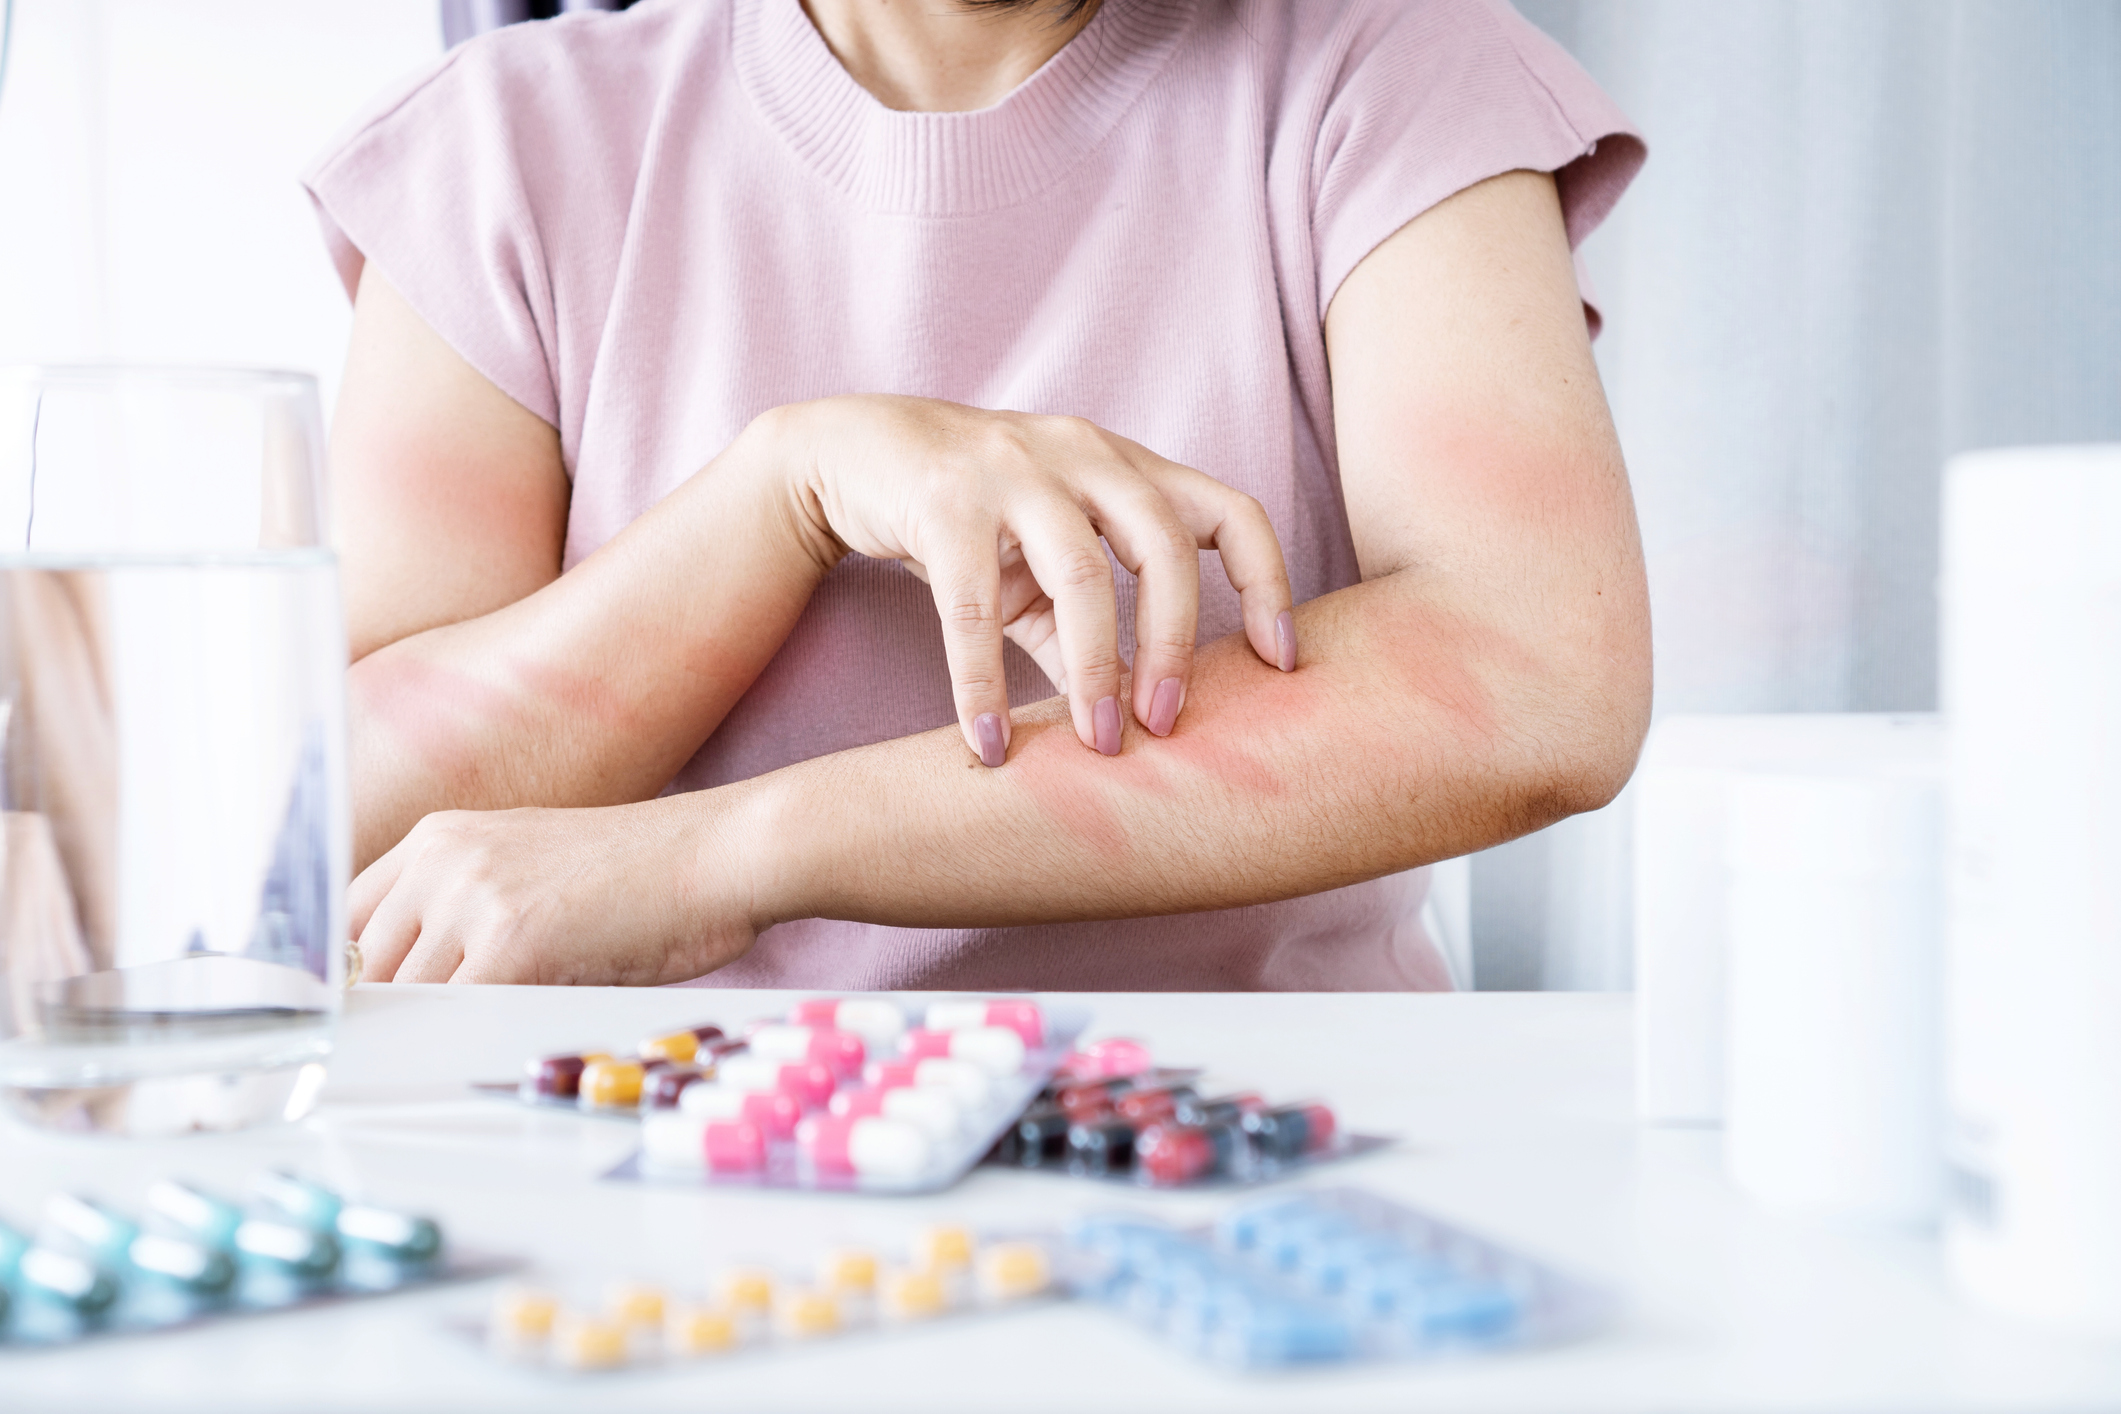 Egy asztalnál ülő nő vakarja vörös foltos karját, az előtte lévő asztalon különböző allergiás gyógyszerek vannak.